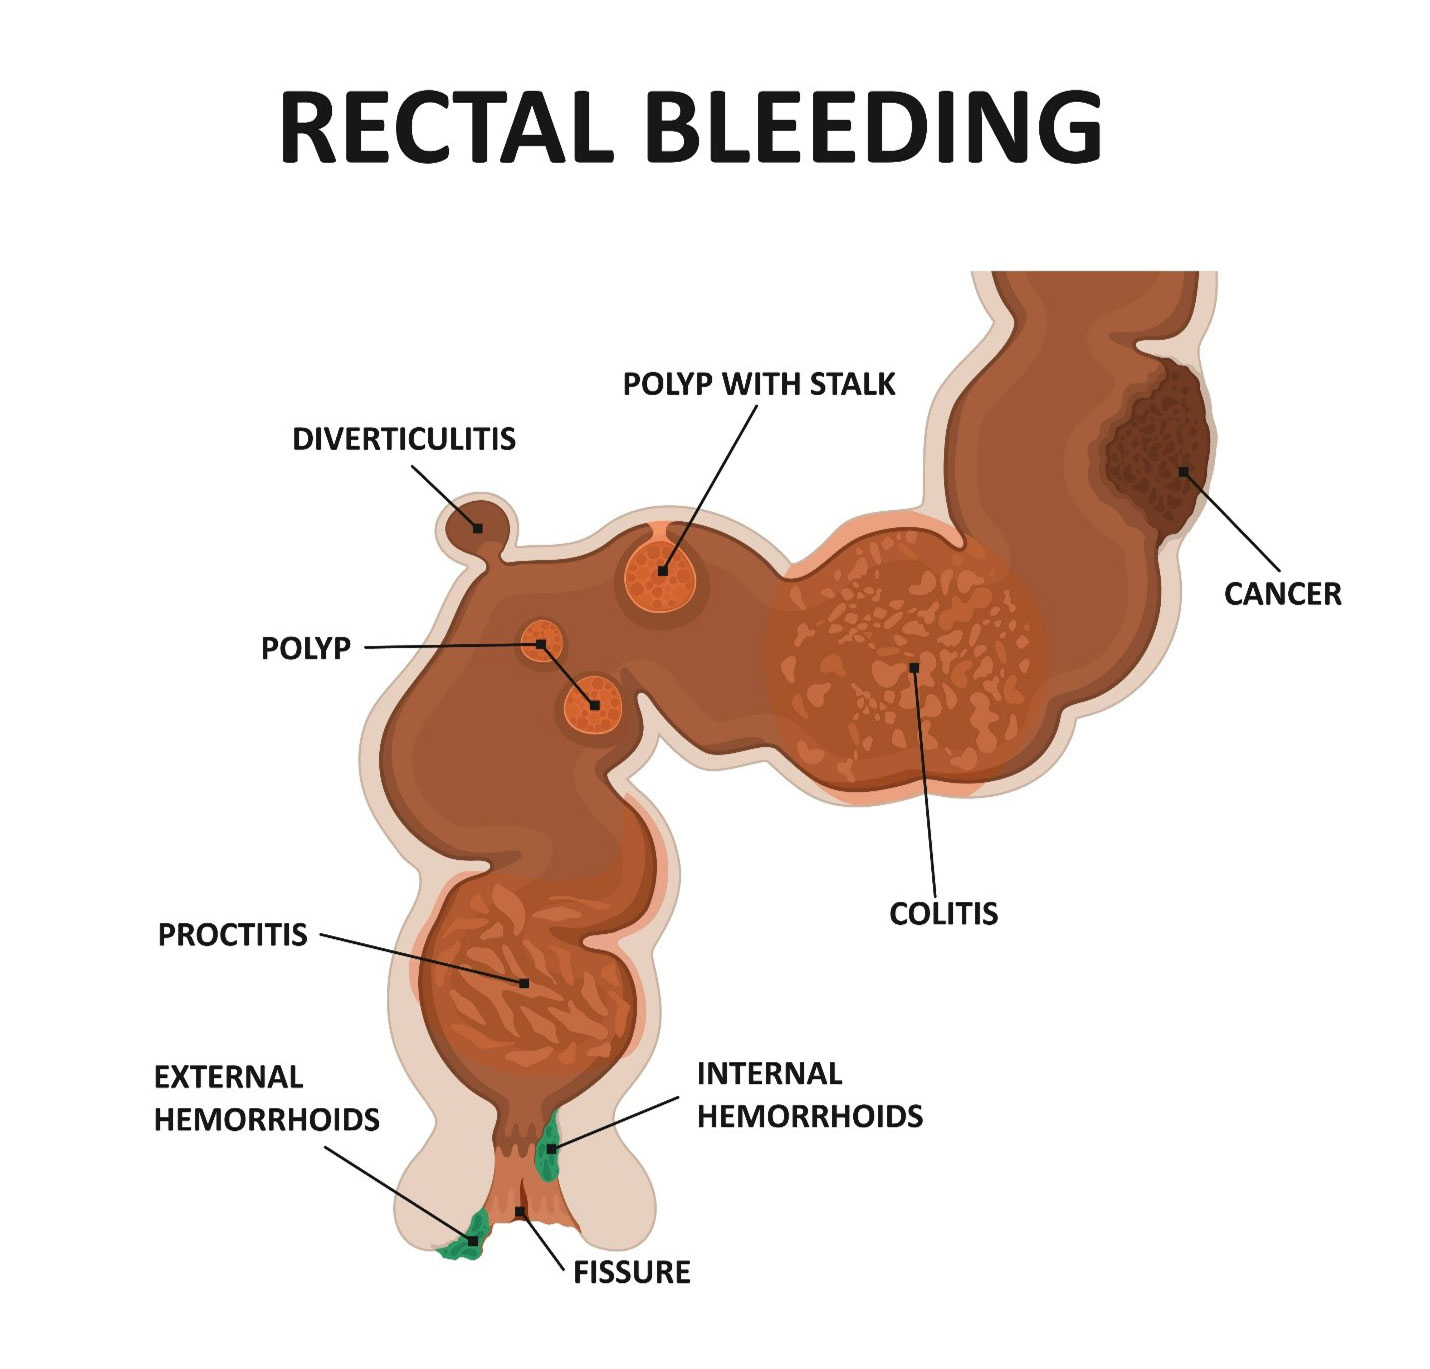 Rectal bleeding causes